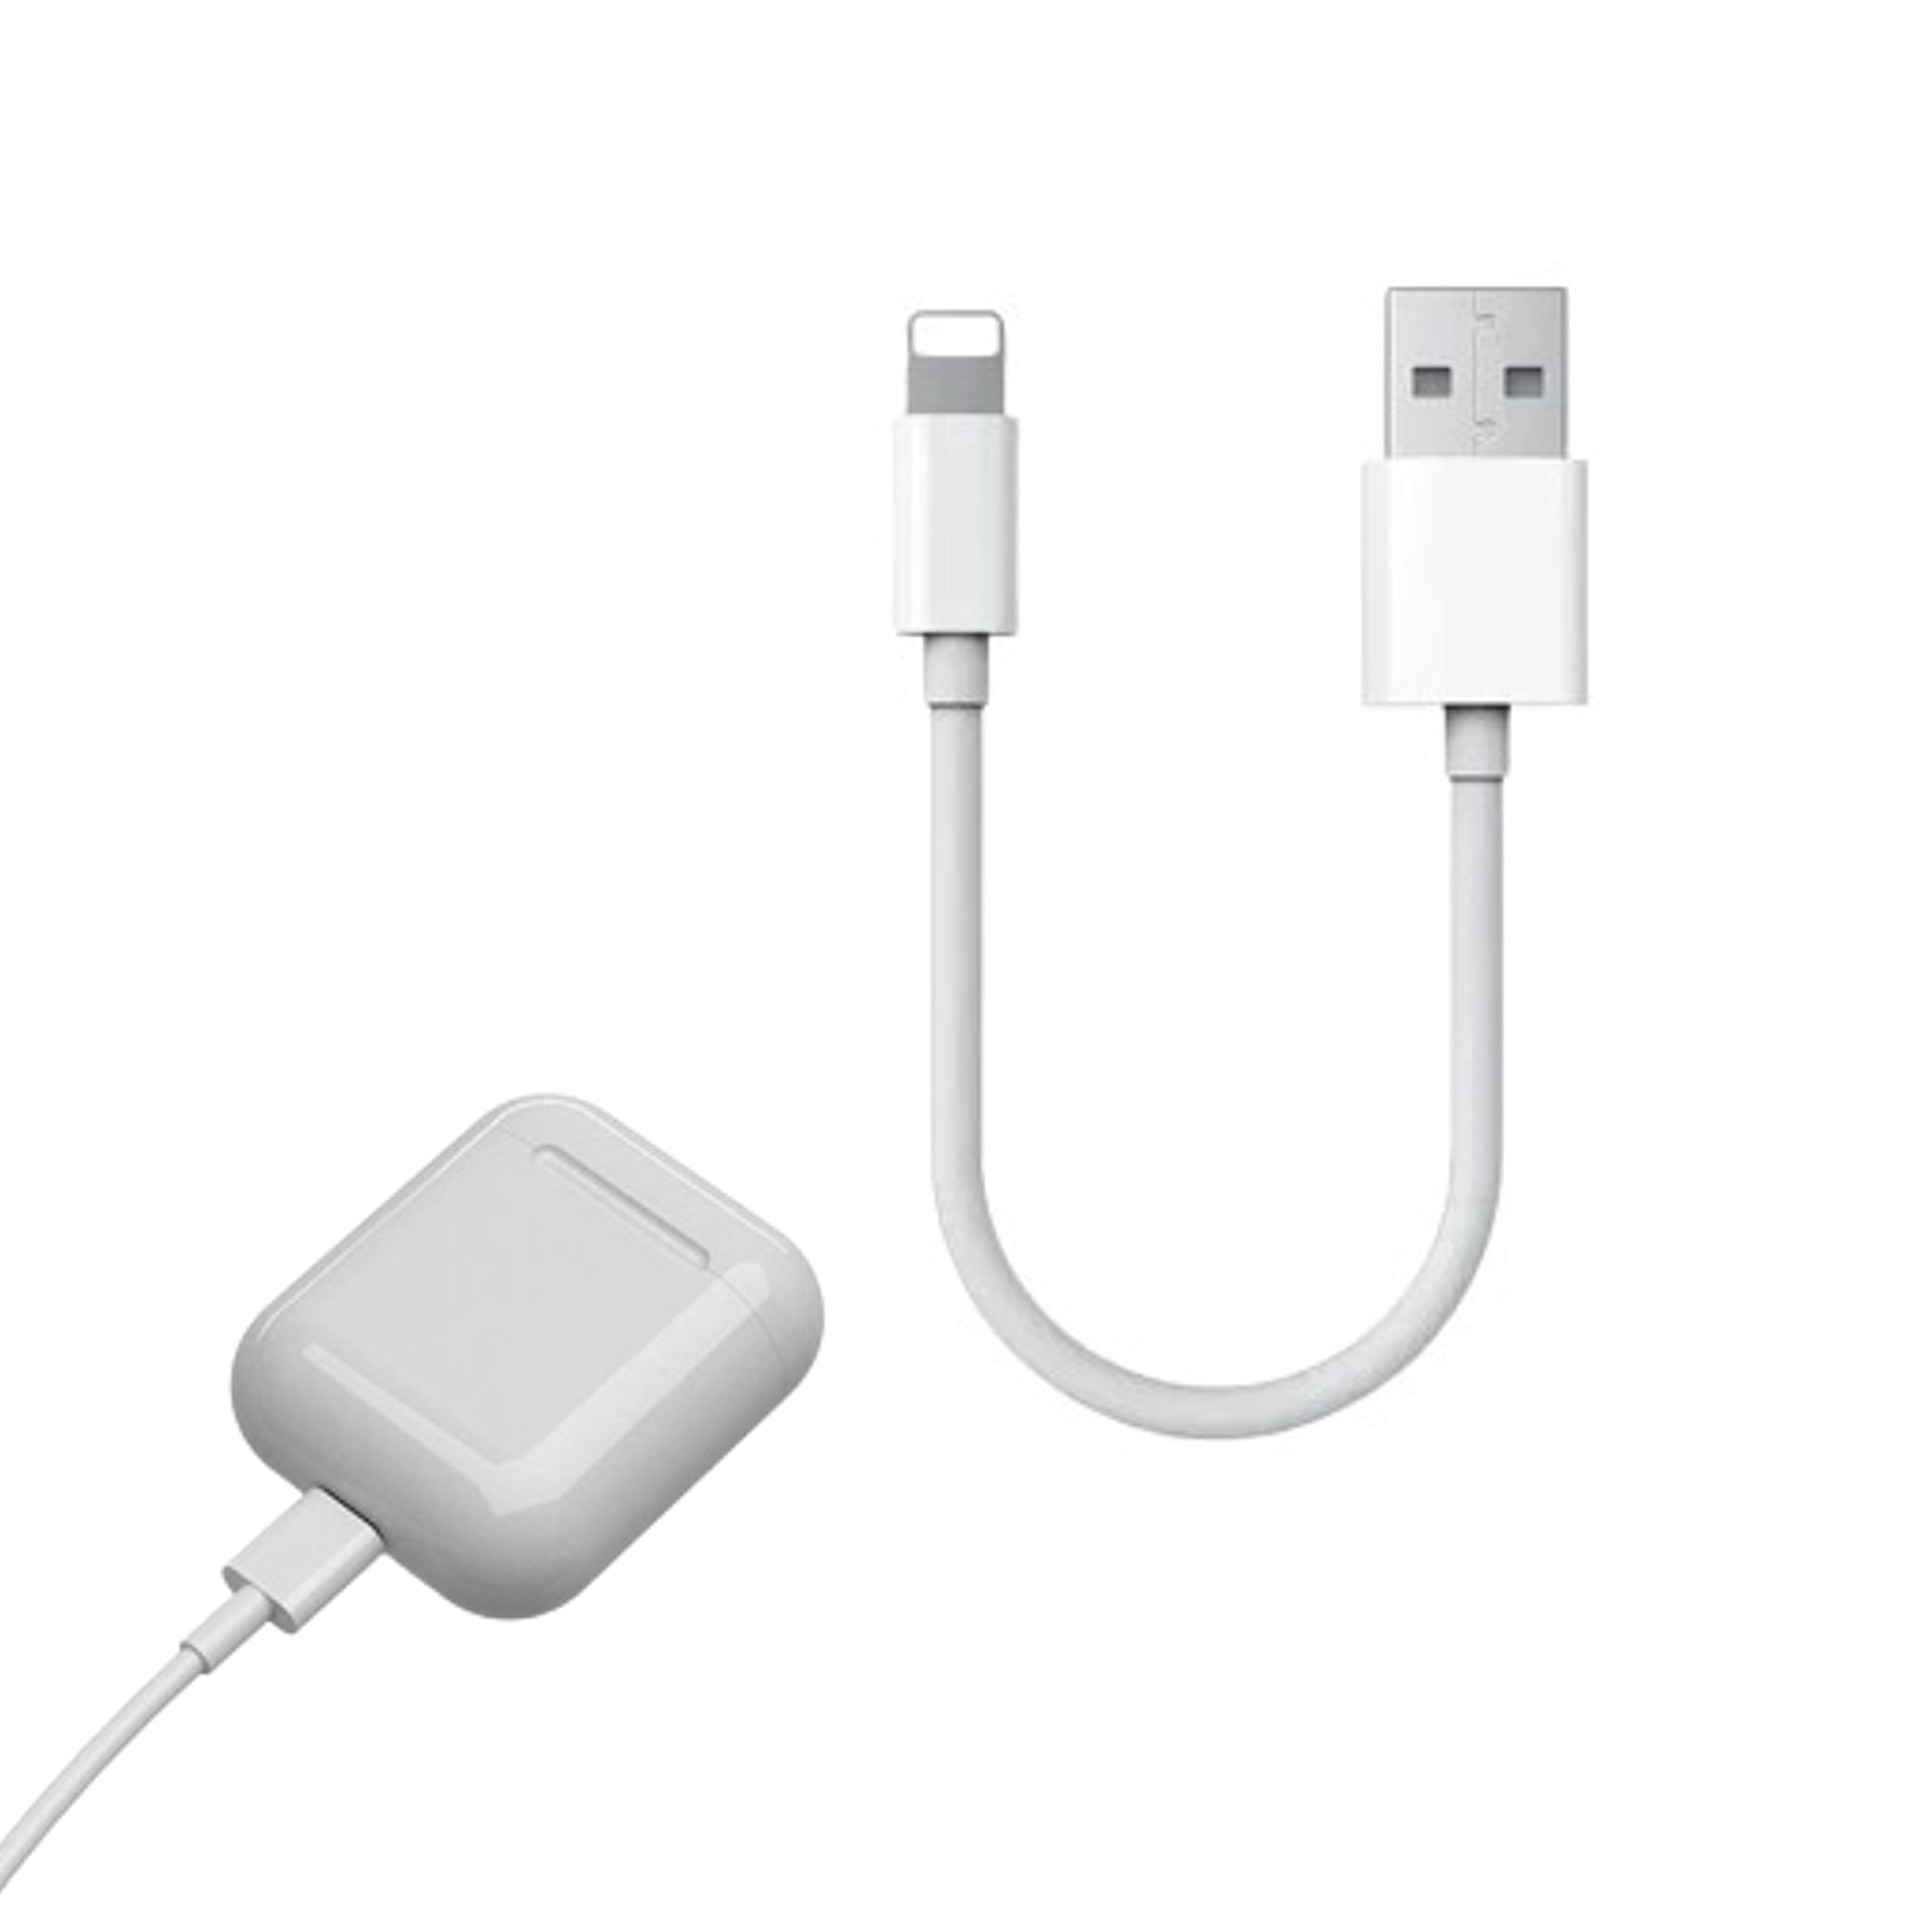 Cargador USB Lightning para iPhone - ShopMundo